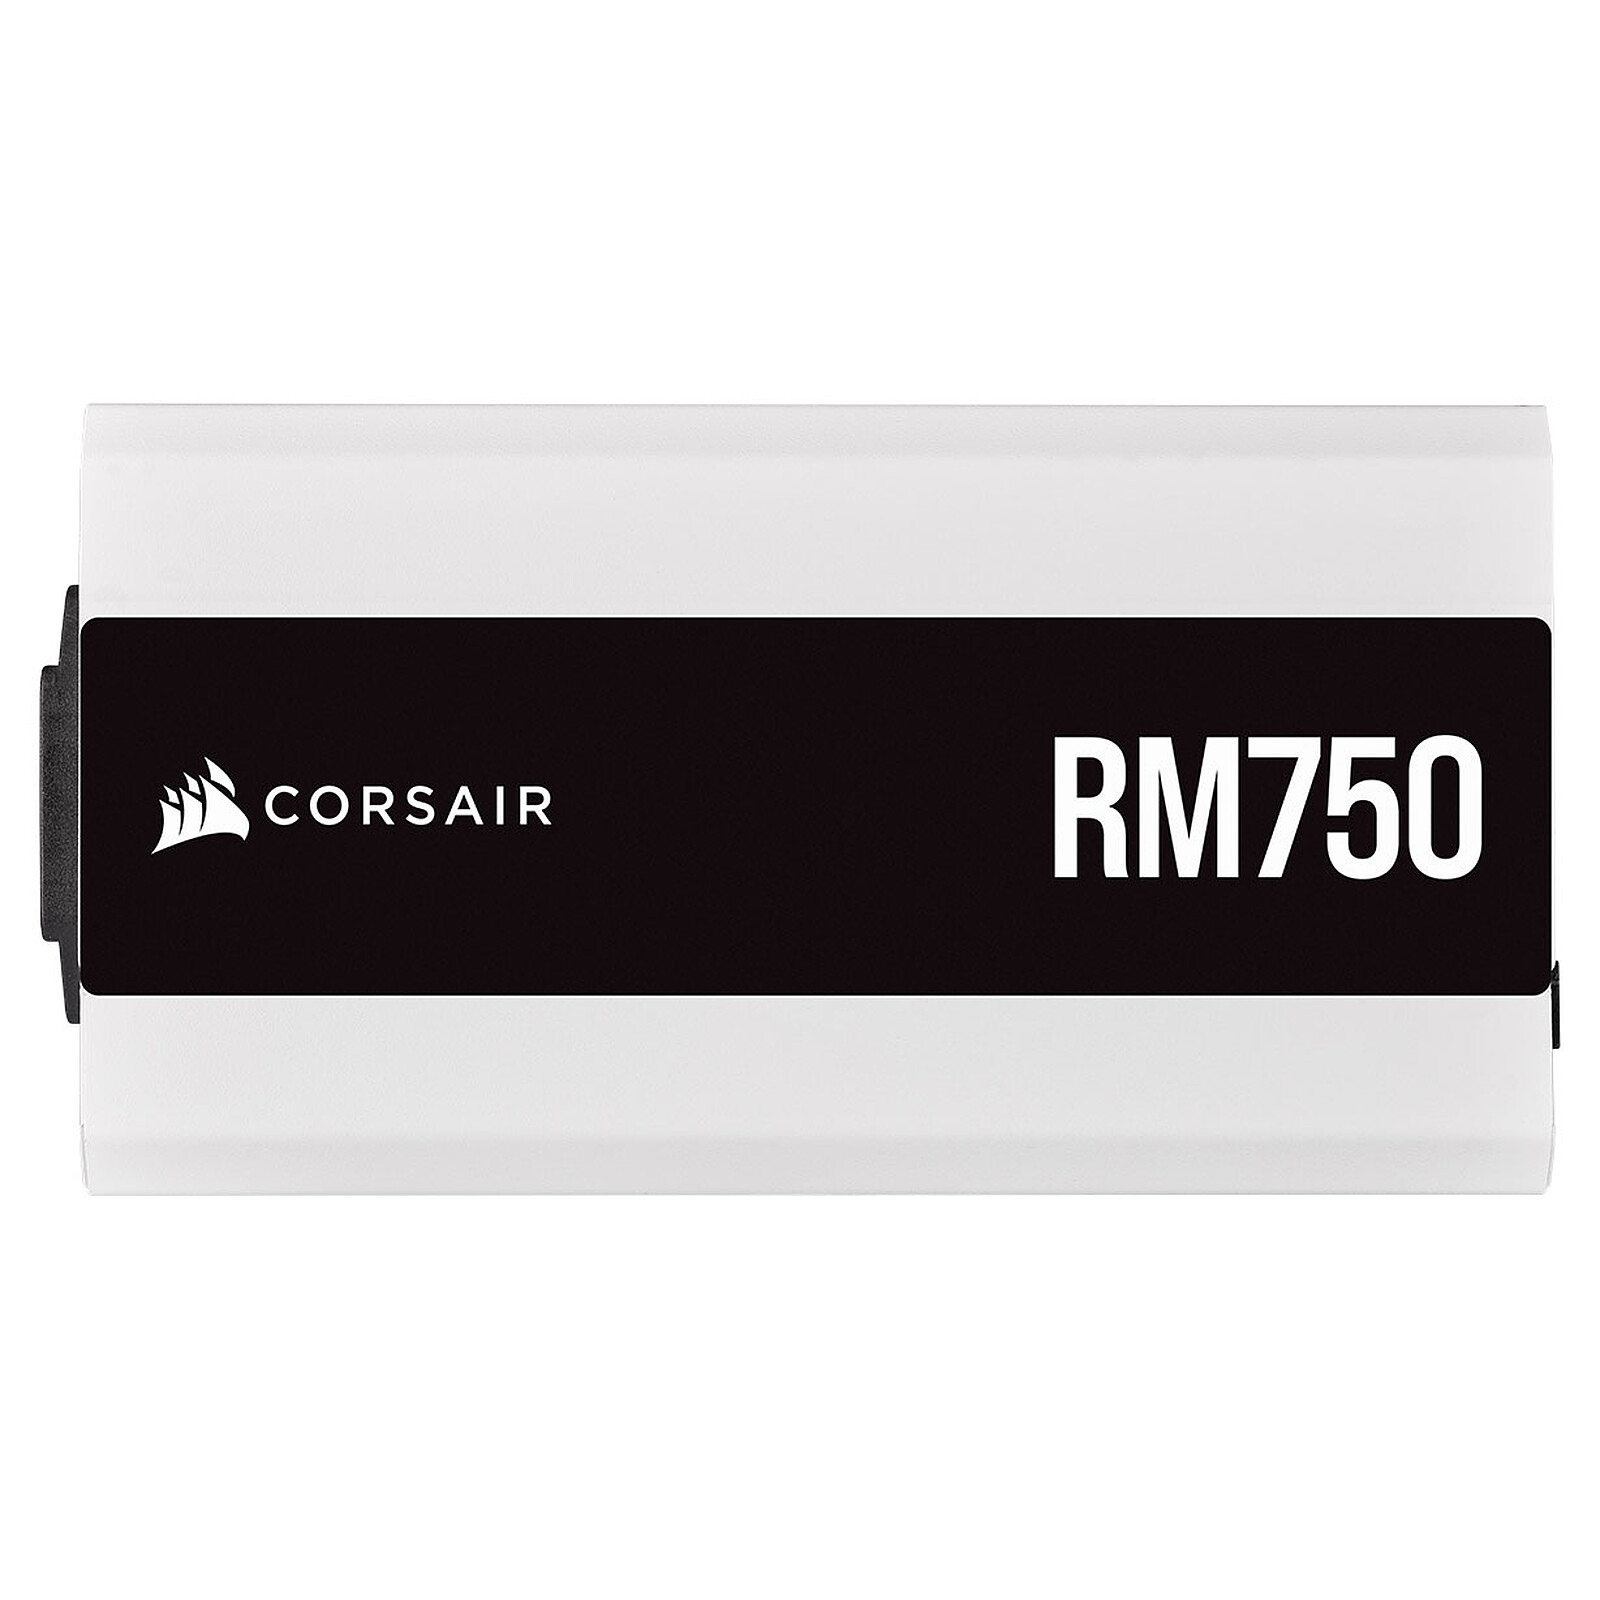 Corsair RM750, RM Series Alimentation PC (Entièrement Modulaire ATX, 80  Plus Gold, 750 Watt) - Noir (EU)